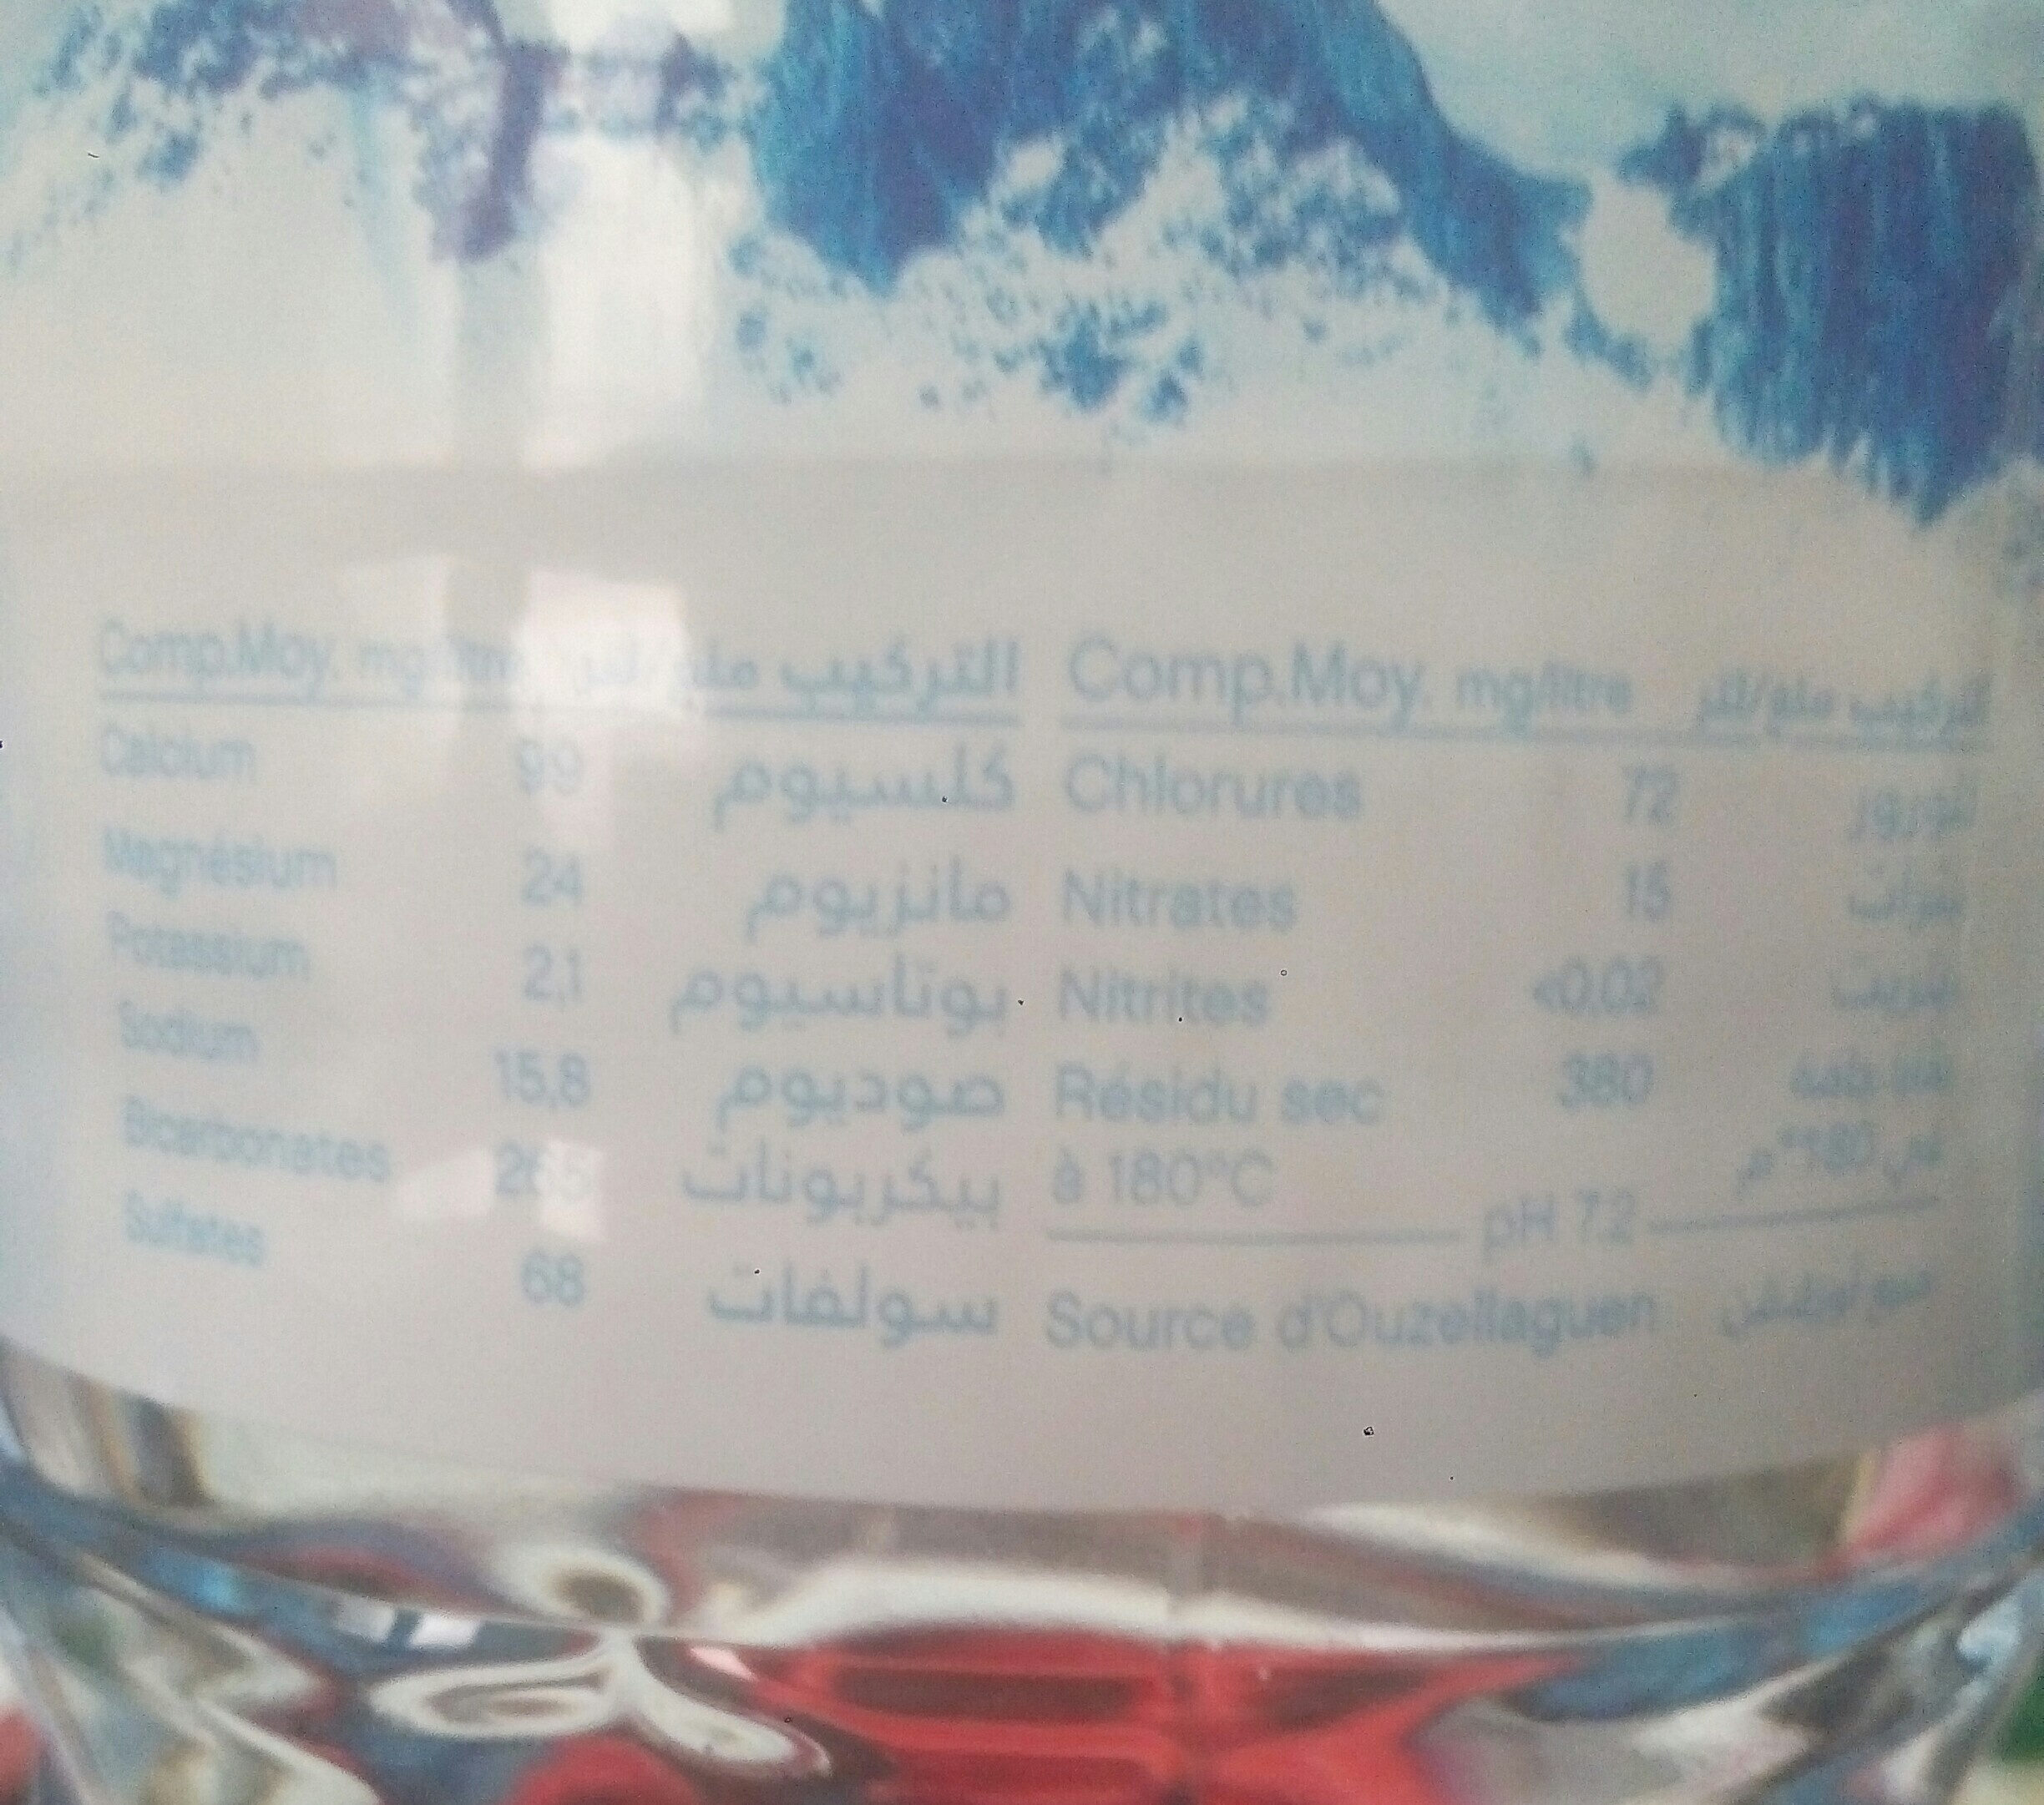 eau minerale - المكونات - fr